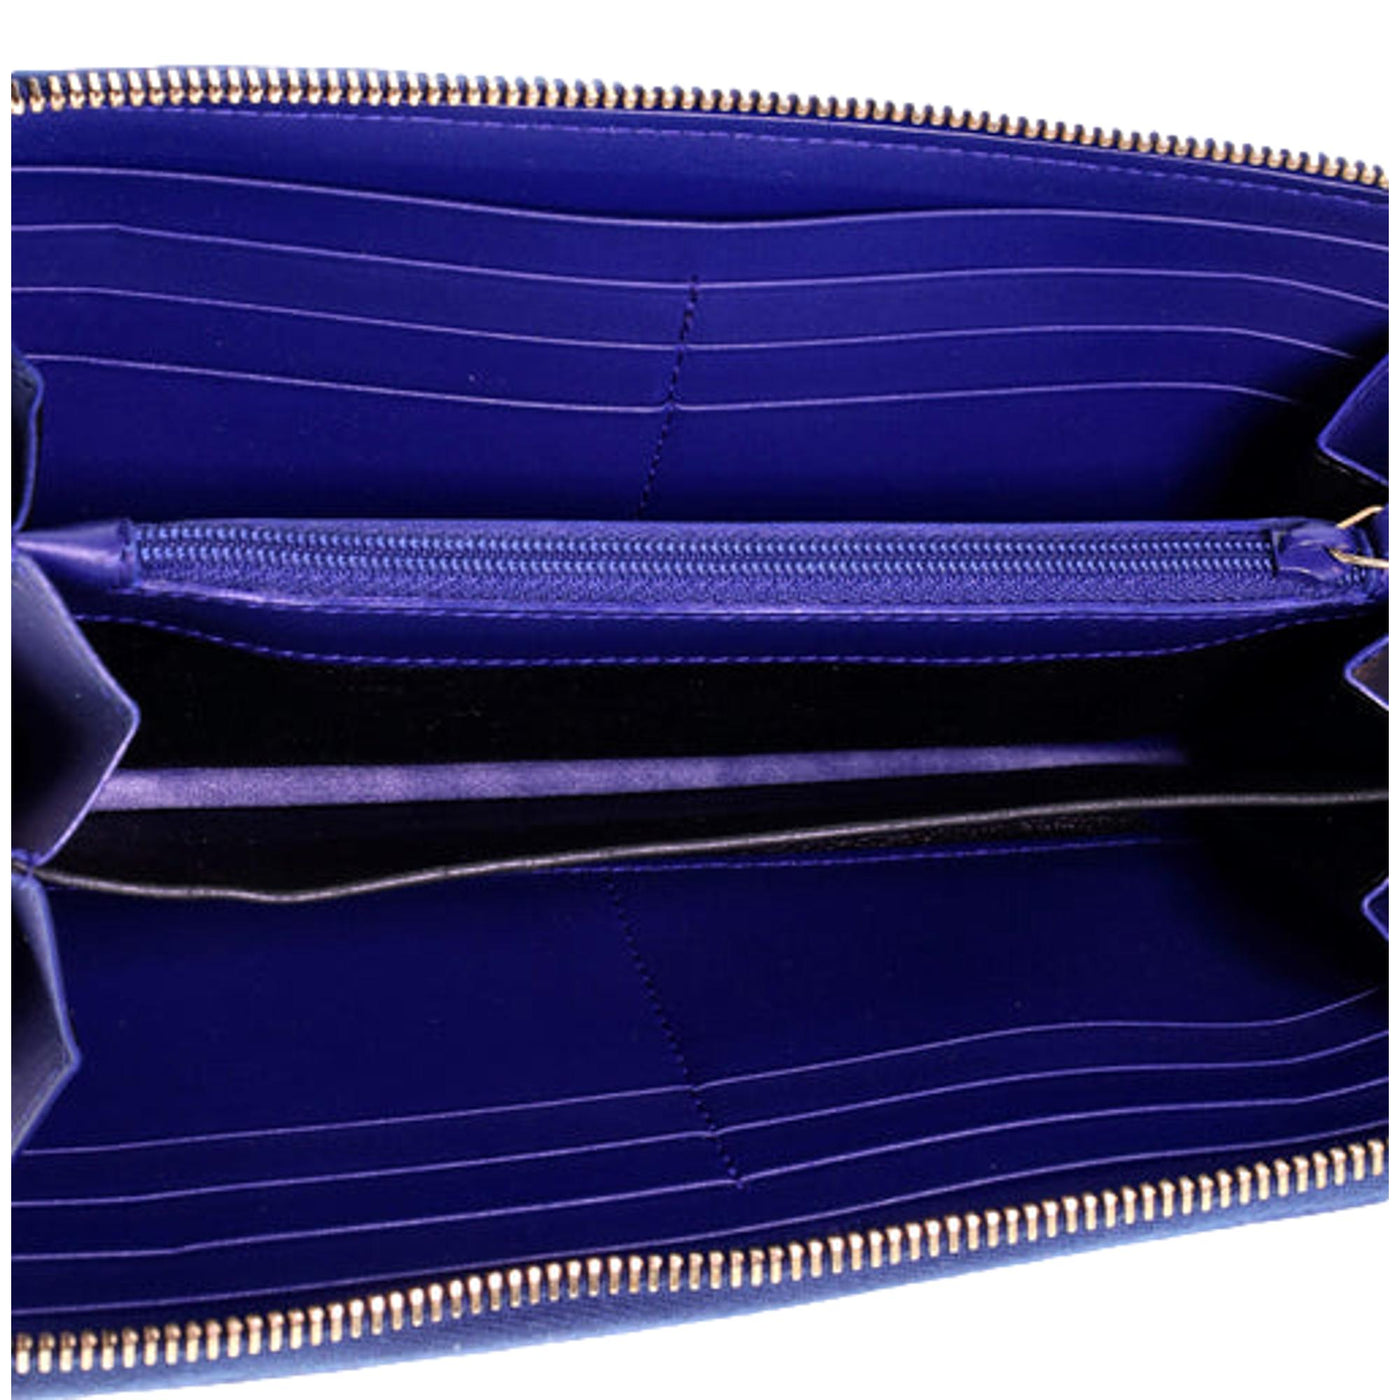 Saint Laurent Belle de Jour Blue Patent Leather Continental Zipper Wallet - LUXURYMRKT